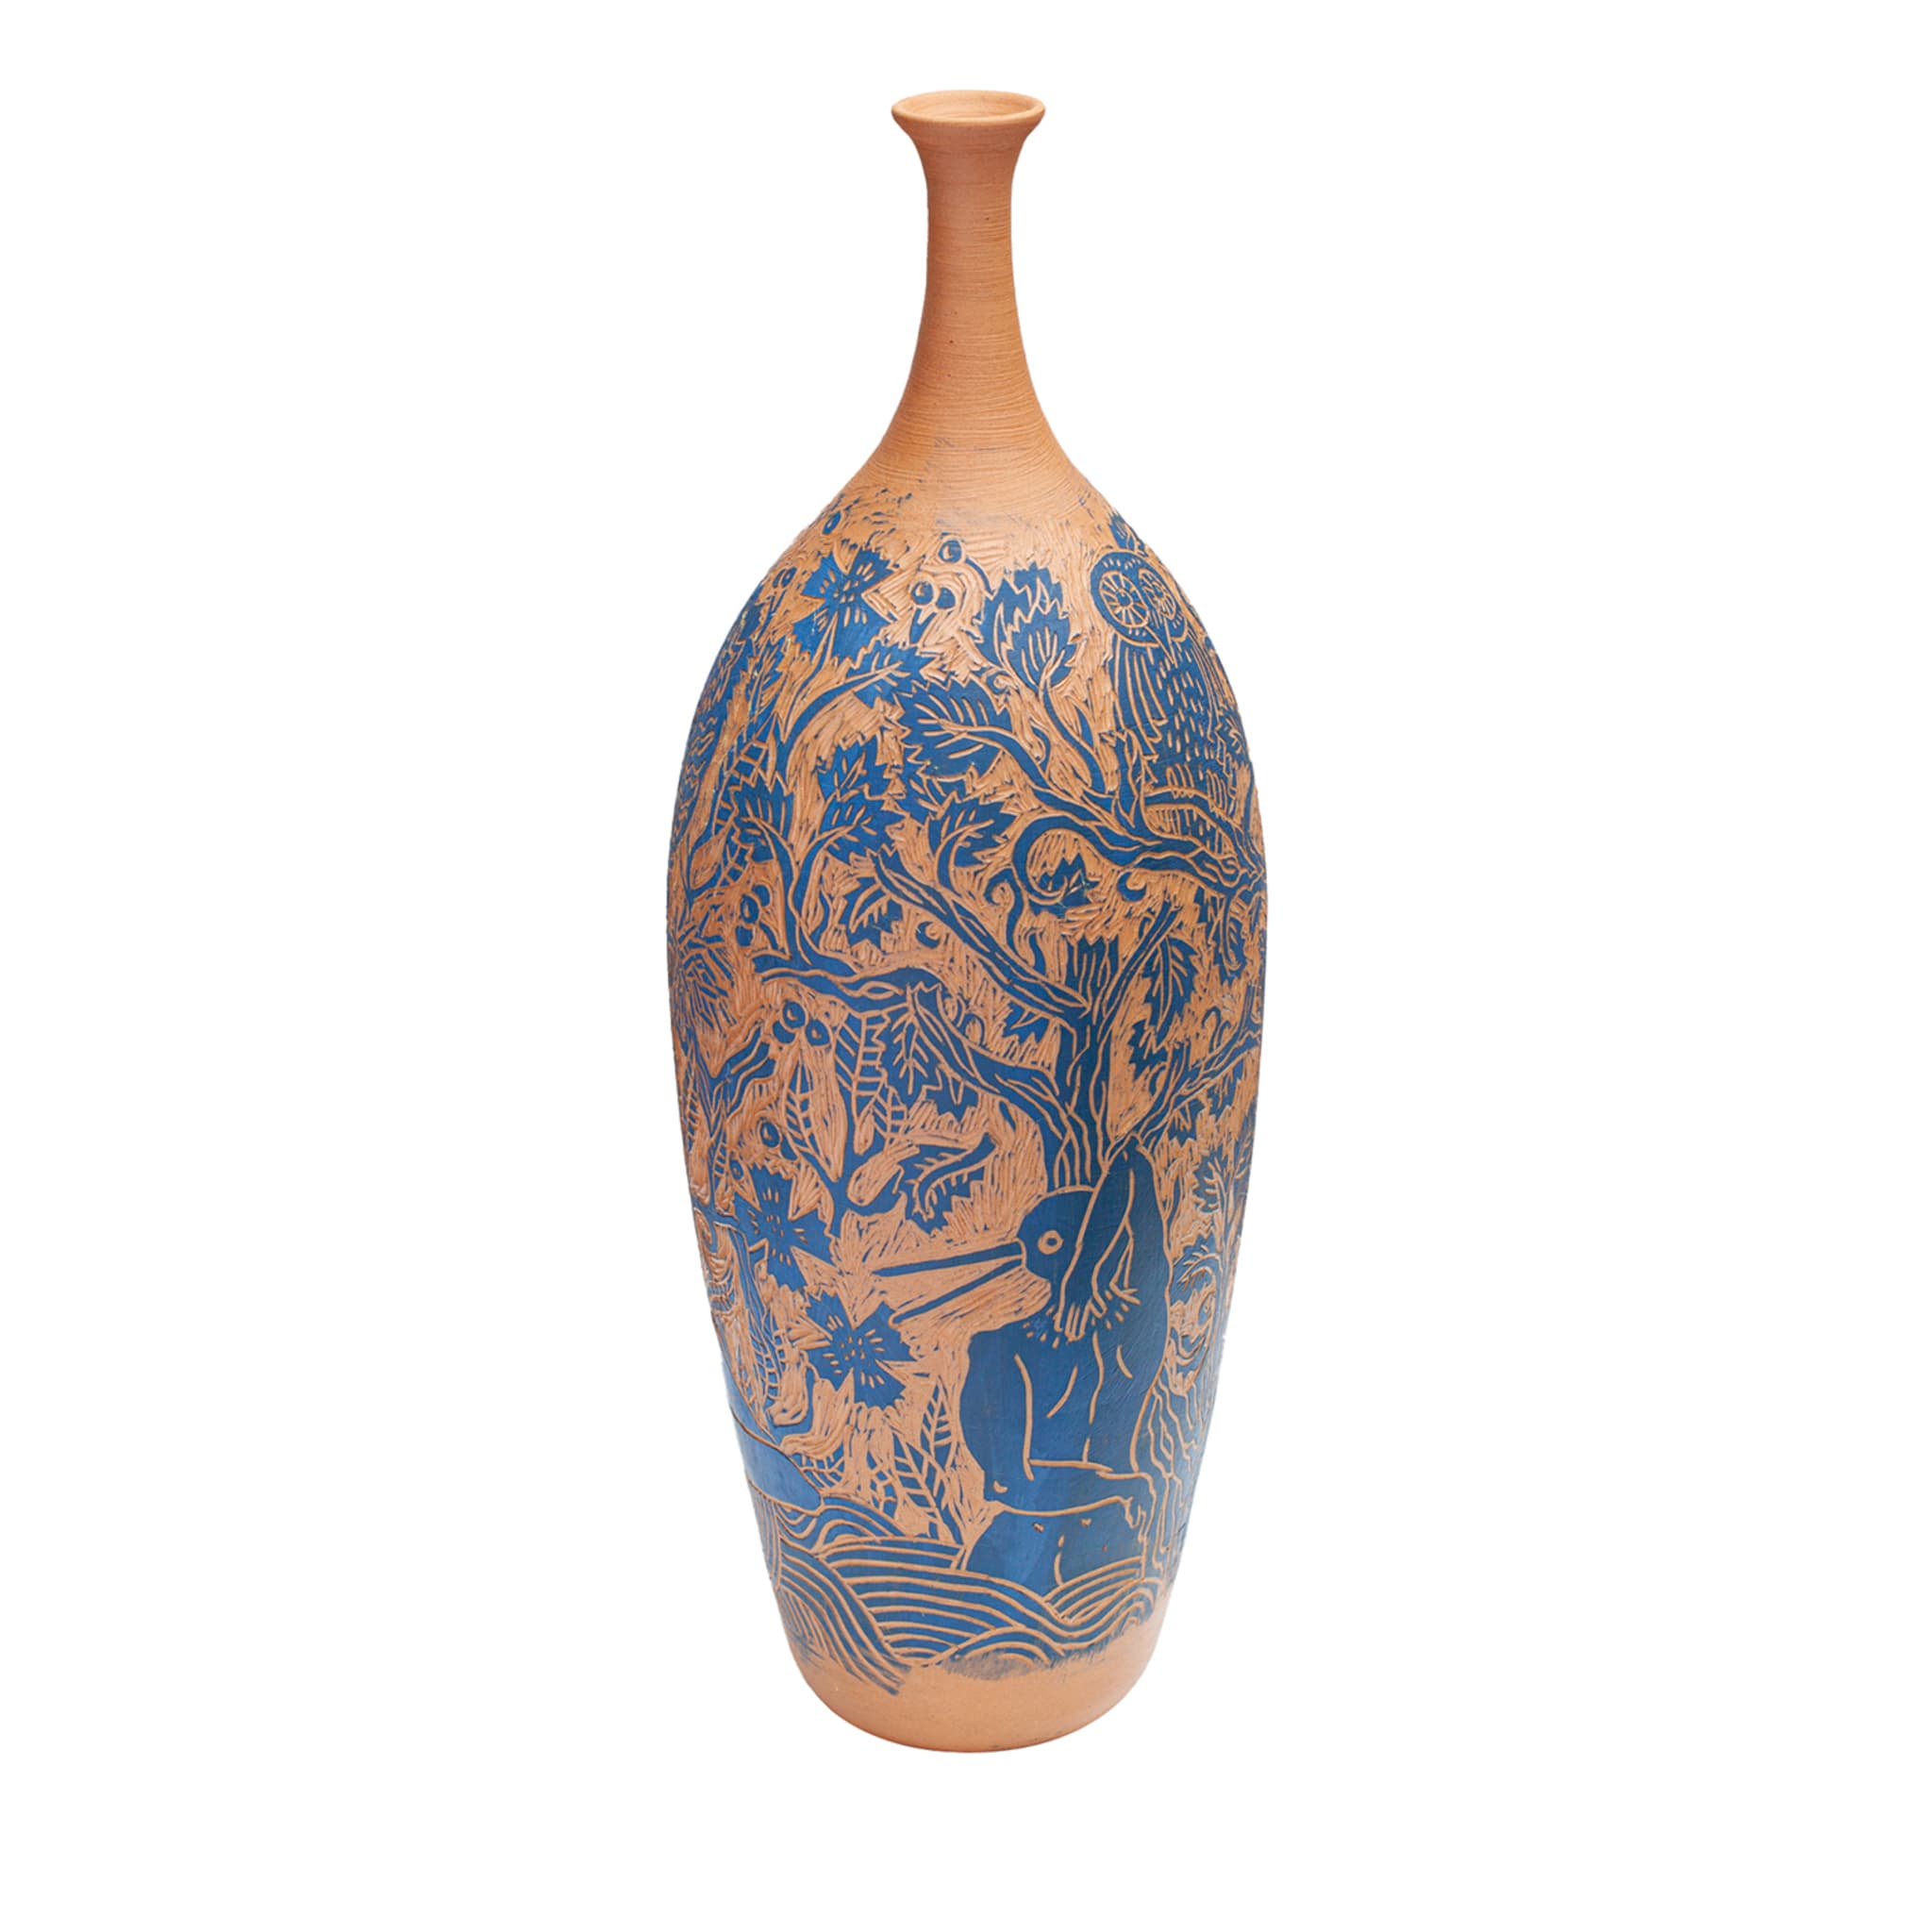 Aironi-Reiher-Vase von Clara Holt und Chiara Zoppei - Hauptansicht